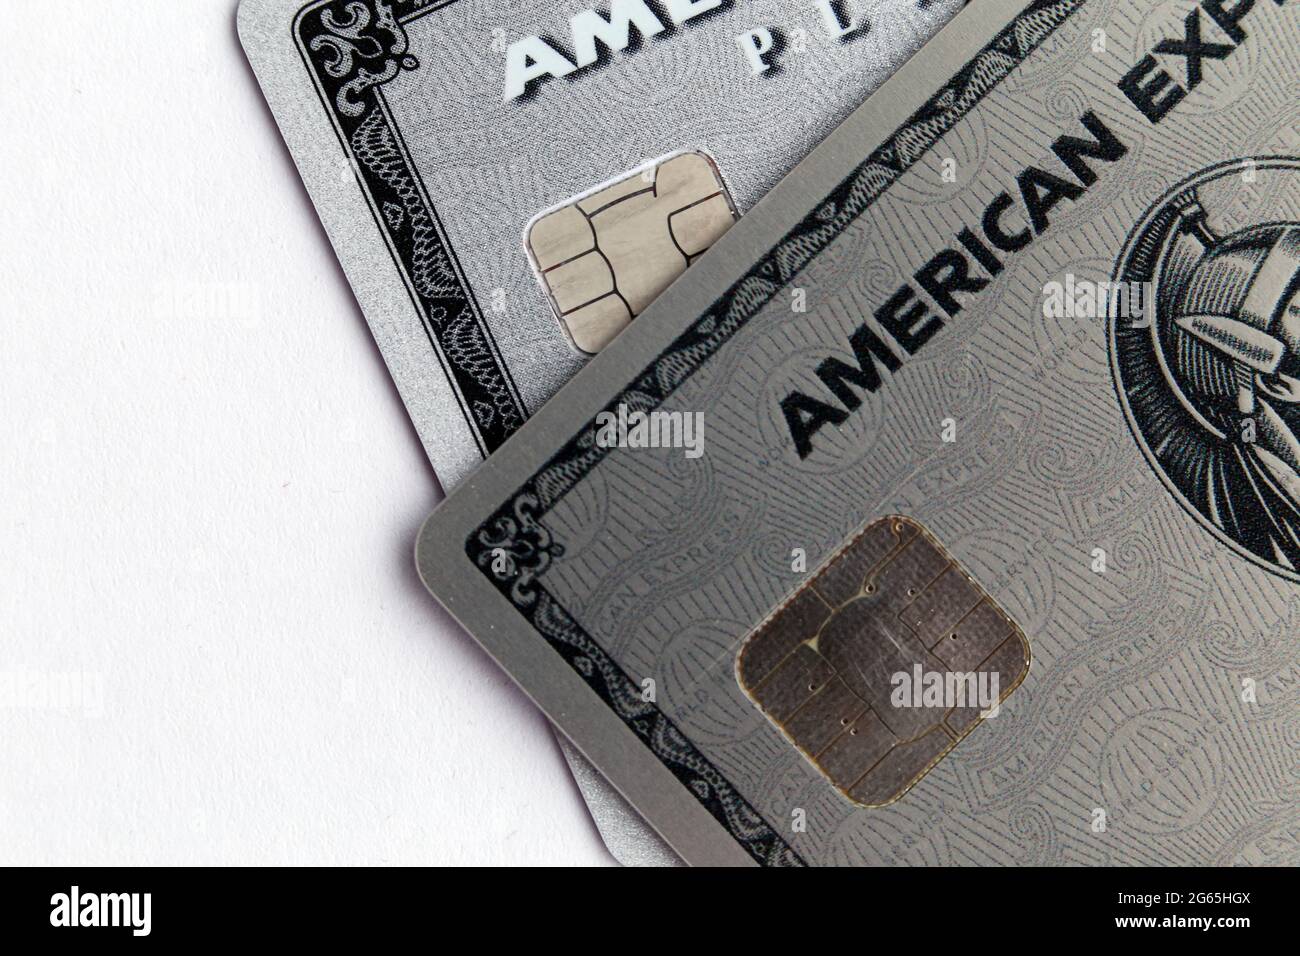 Cartes American Express Platinum (Amex Platinum) en gros plan : une carte en plastique et une nouvelle carte métallique. Avril 2020, Espoo, Finlande. Banque D'Images